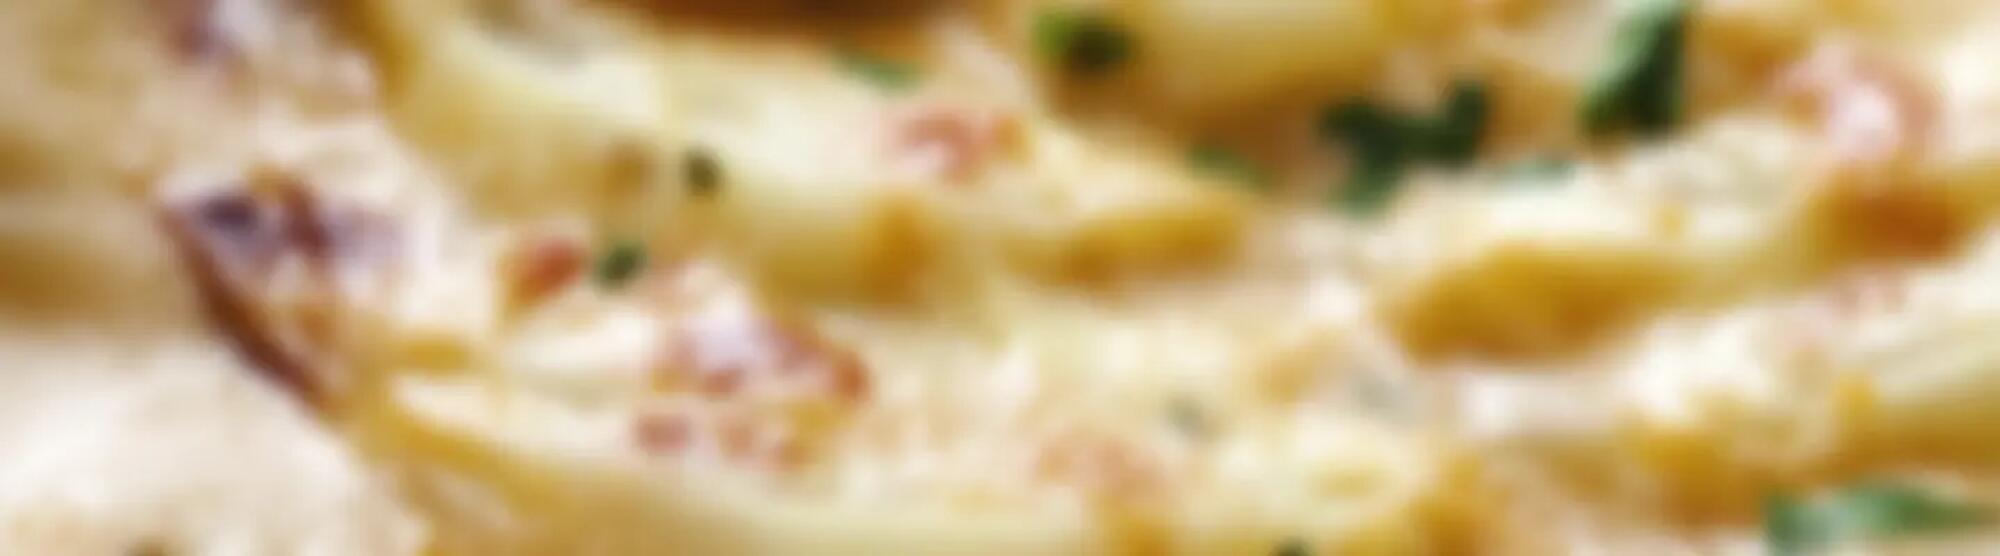 Recette : Gratin de pommes de terre au fromage à raclette